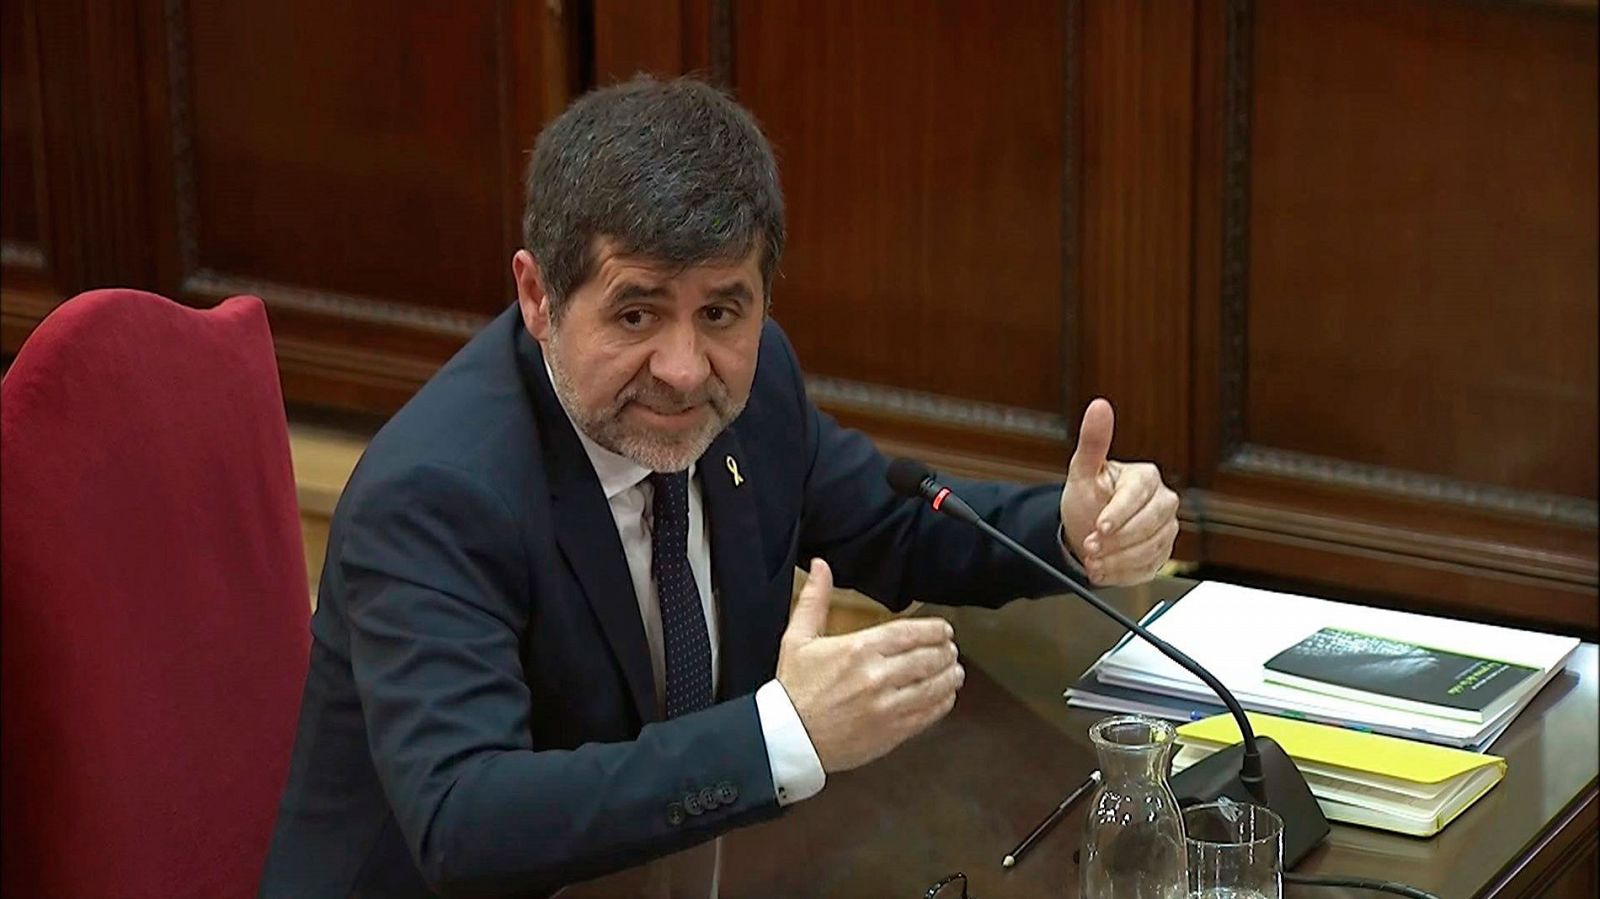 Jordi Sànchez acusa al fiscal de criminalizar una protesta "pacífica" en su declaración en el Supremo